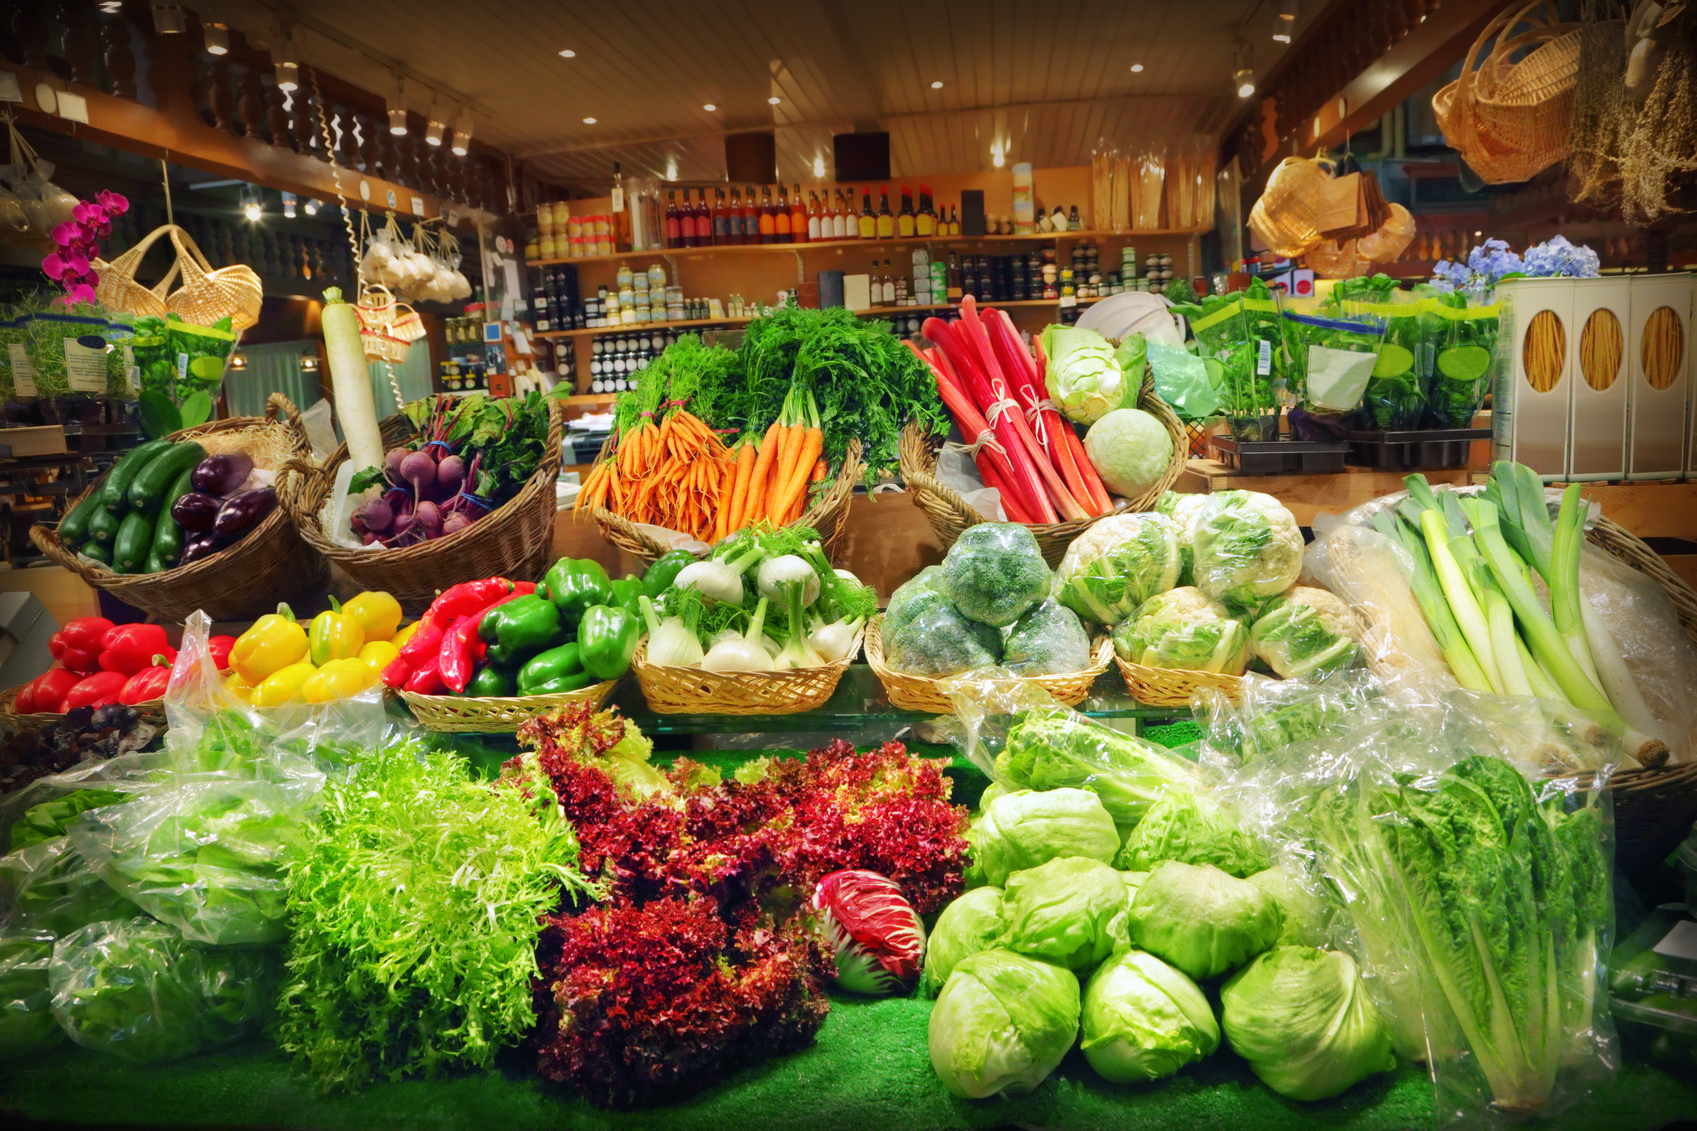 Bachelor vegetable store. Овощи на рынке. Органические продукты. Магазин овощи фрукты. Прилавок с овощами и фруктами.